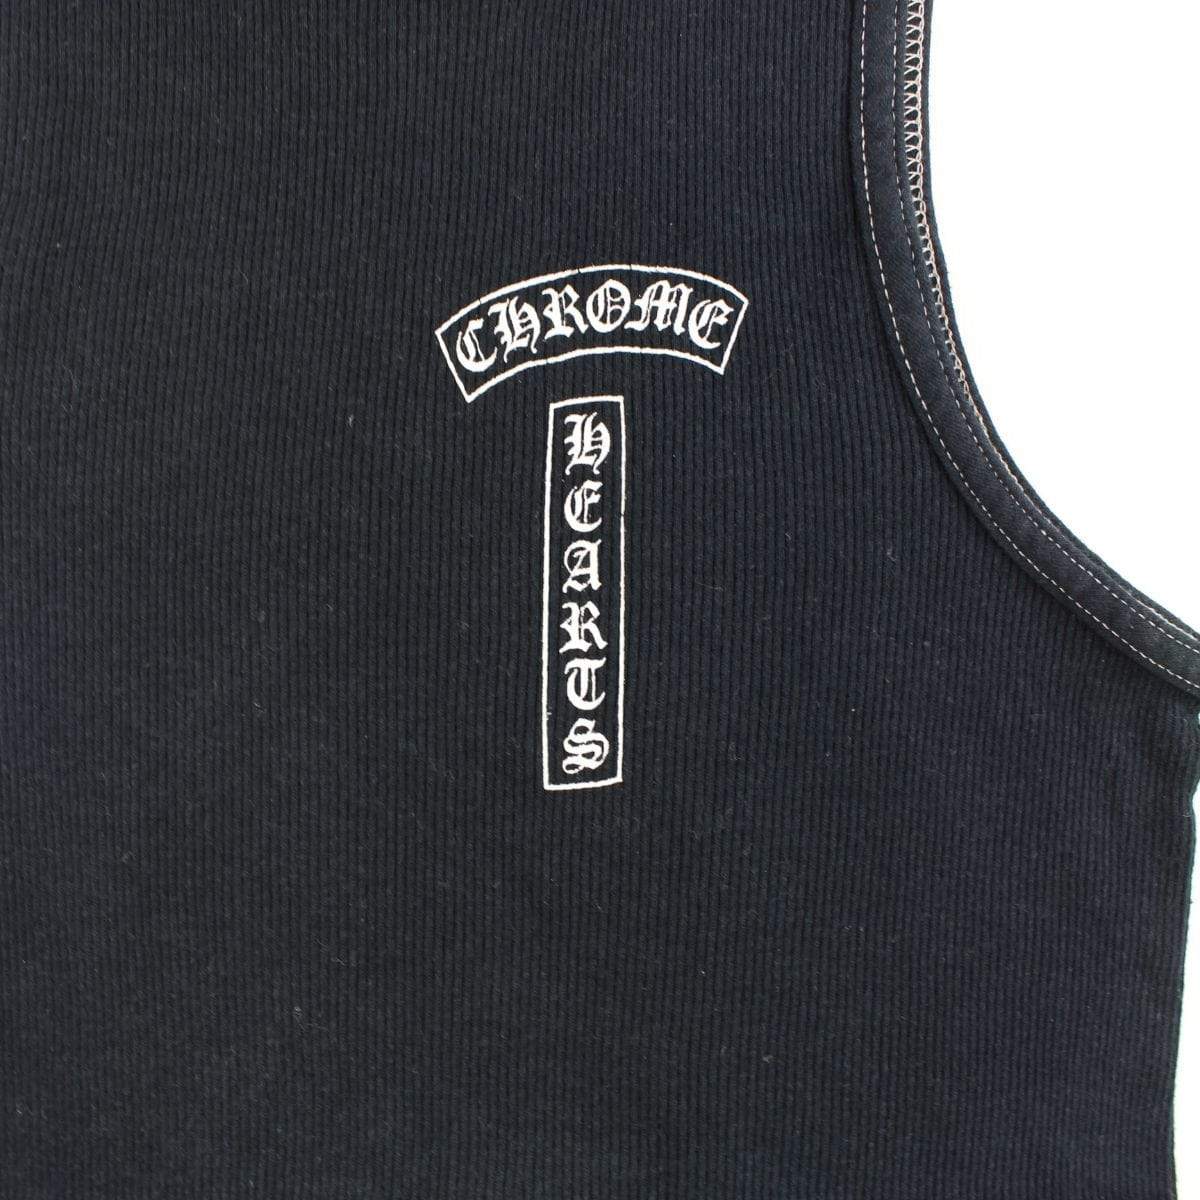 chrome hearts vest black - SaruGeneral